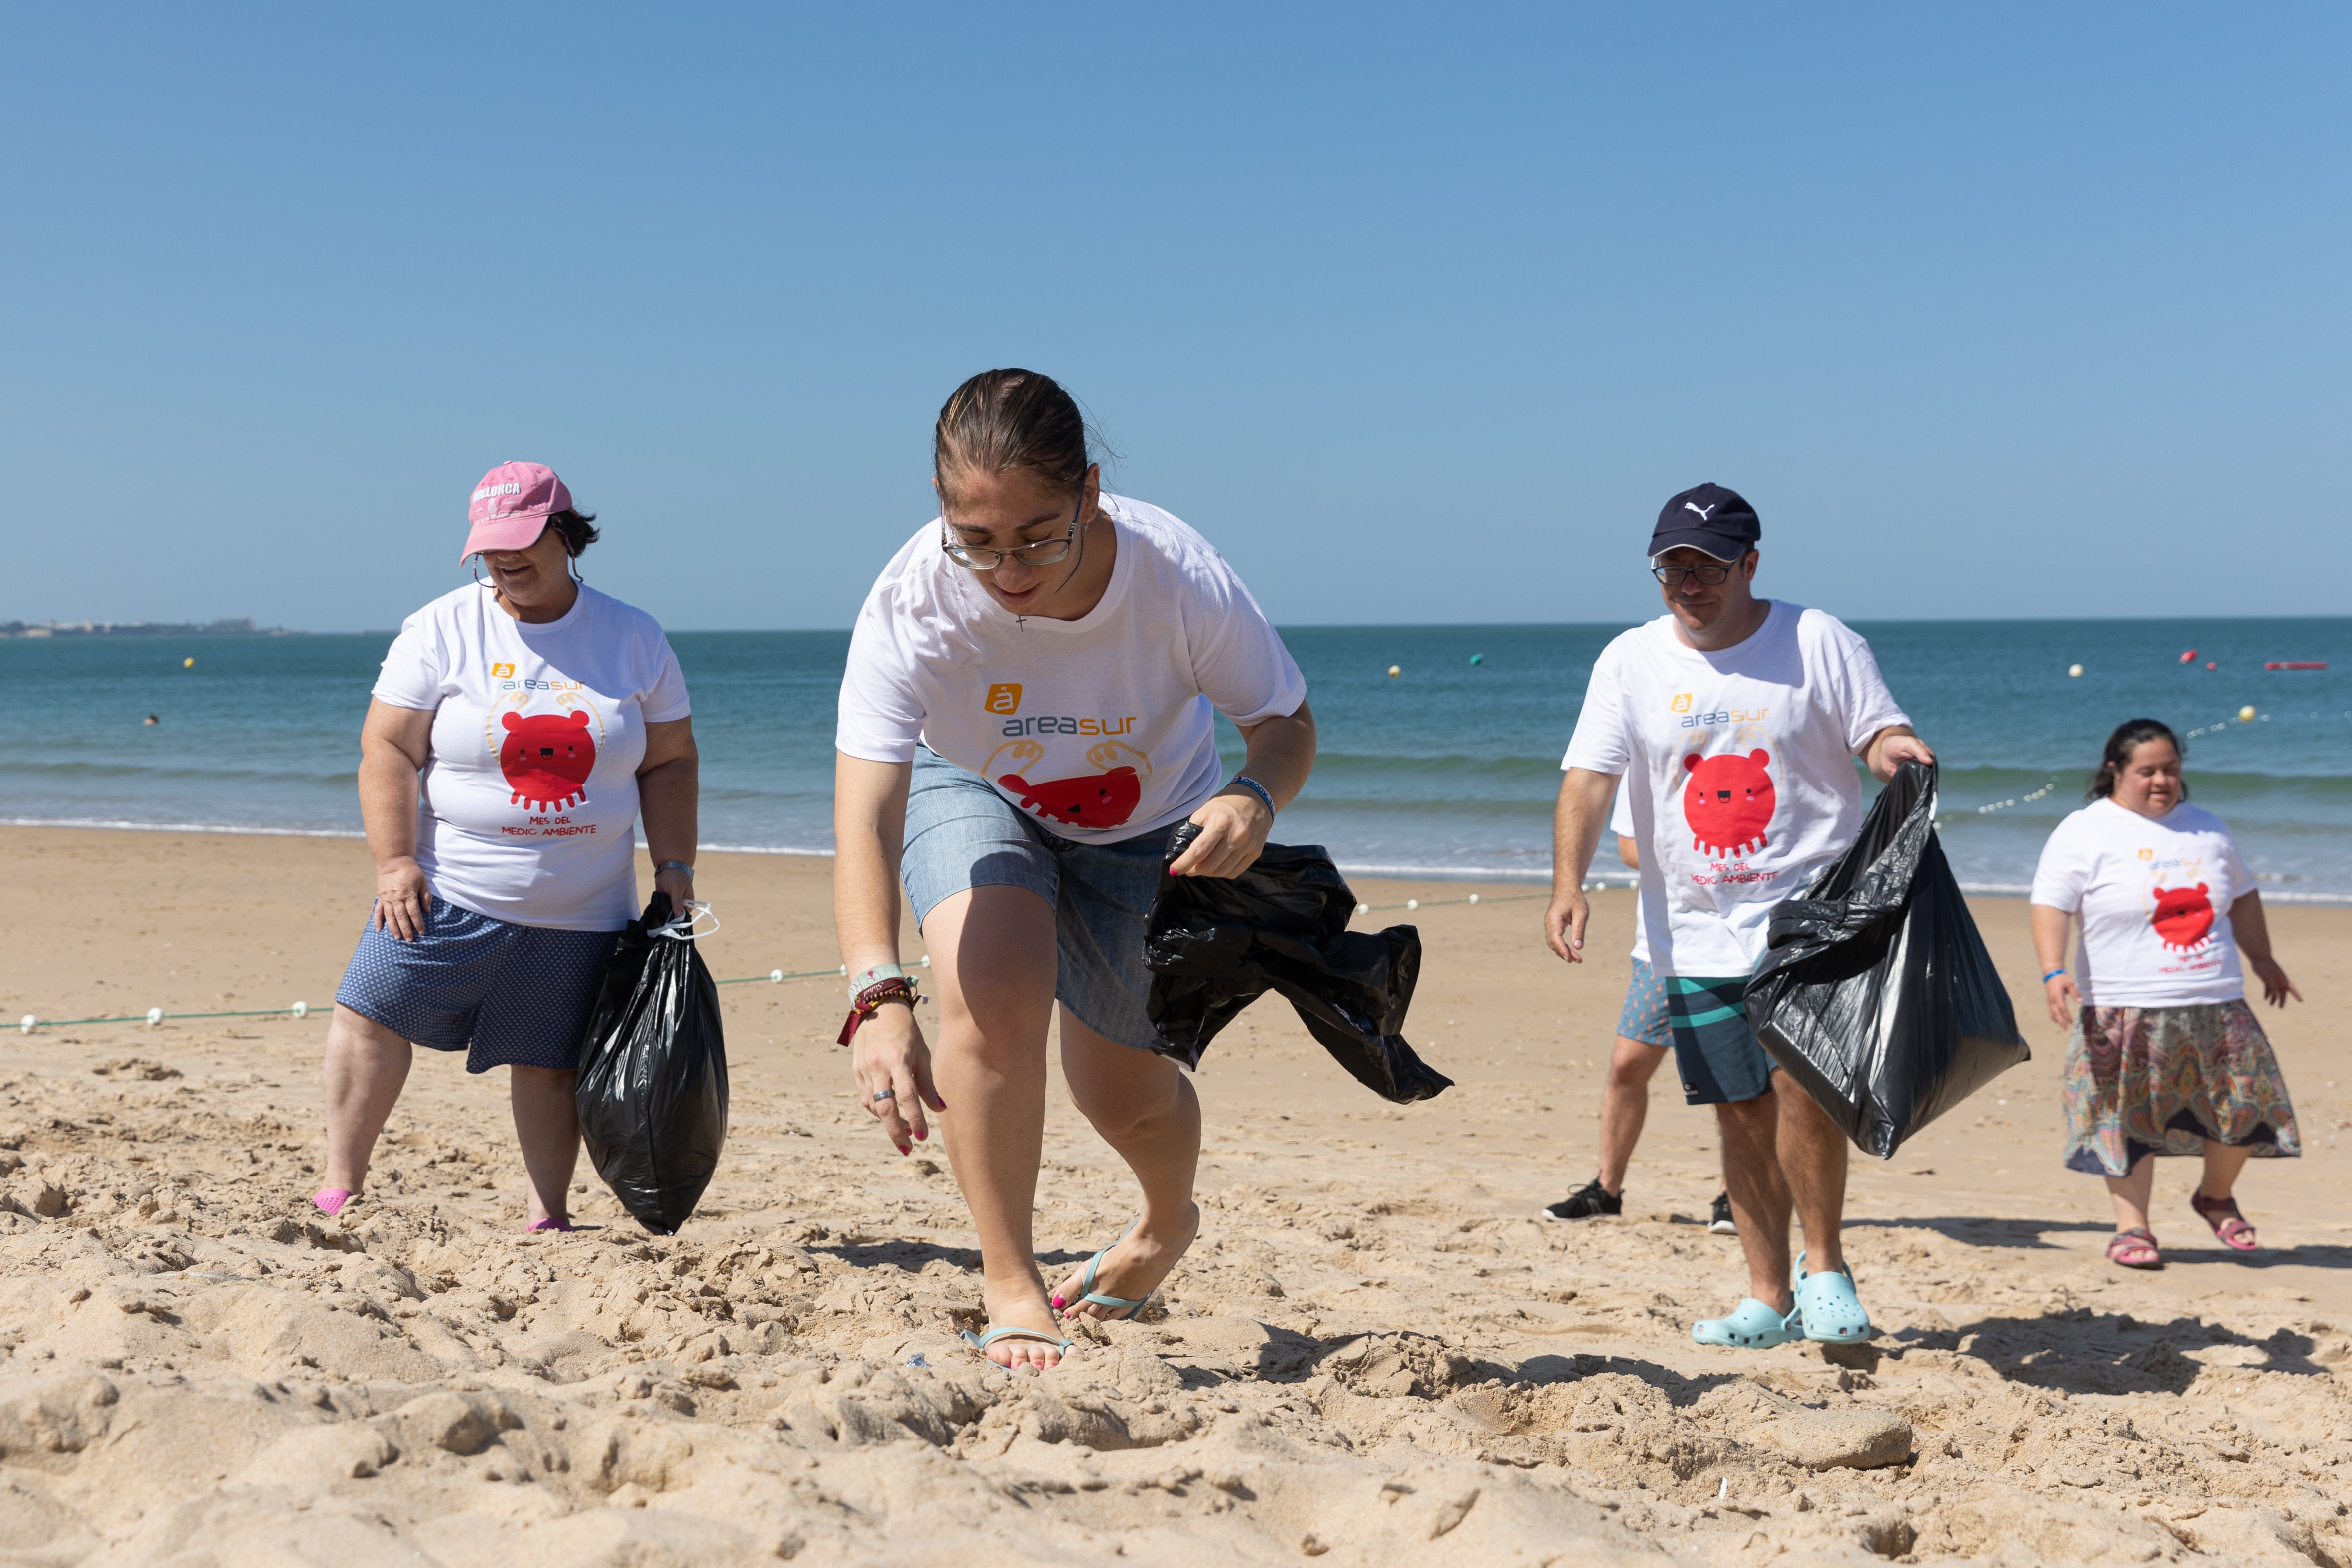 Voluntarios en plena labor de recogida de residuos en al arena de la playa. 